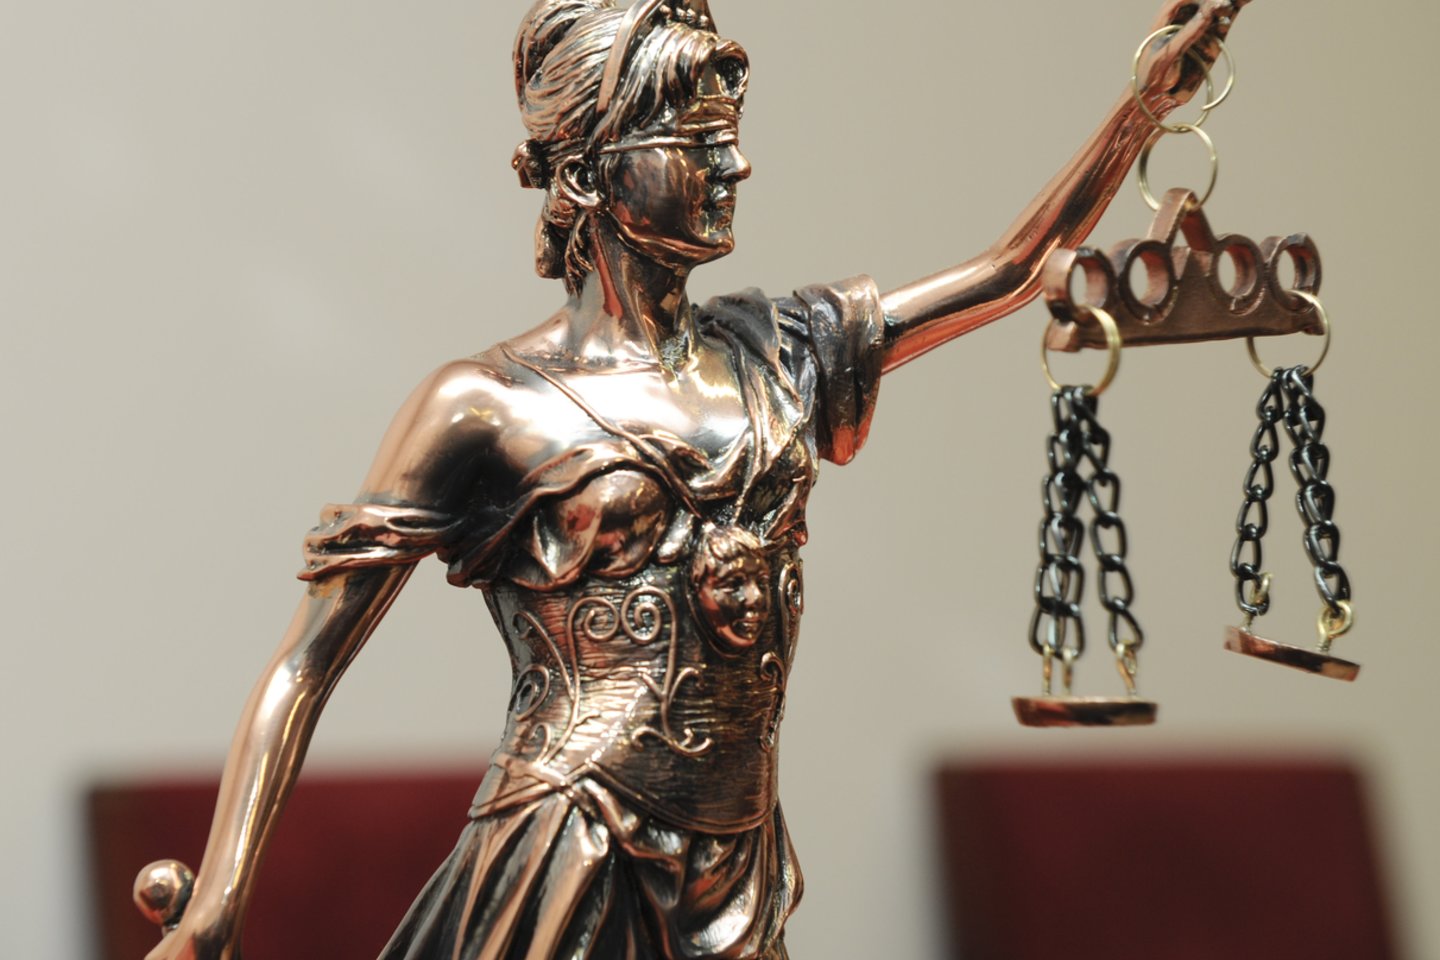 Kaltu dėl kyšininkavimo pripažintam gydytojui teismas skyrė beveik 20 tūkst. eurų baudą.<br>V.Ščiavinsko asociatyvi nuotr.